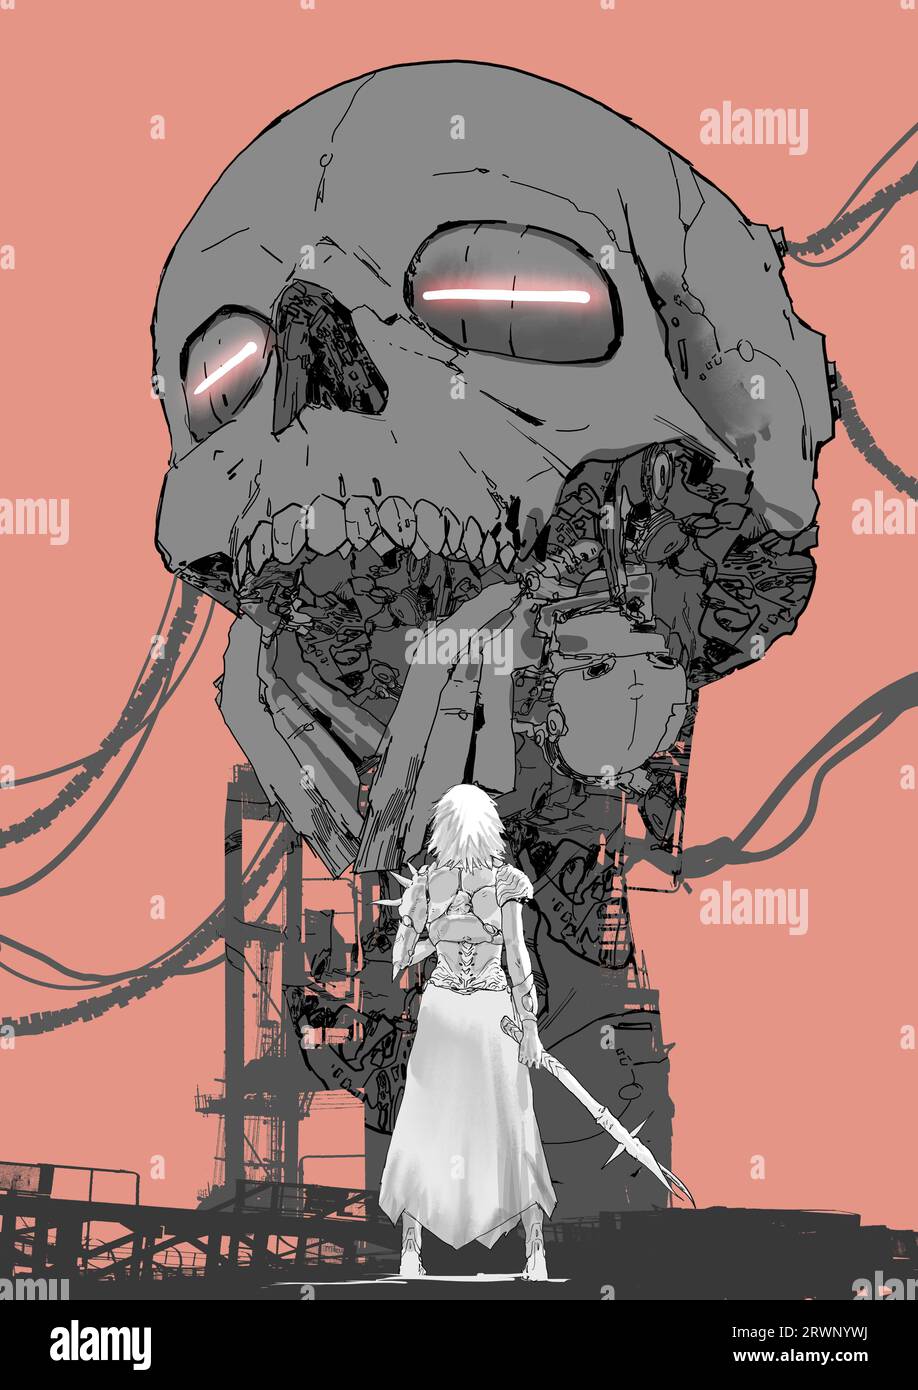 personnage de femme avec une baguette debout contre une structure géante en forme de crâne, style d'art numérique, peinture d'illustration Banque D'Images